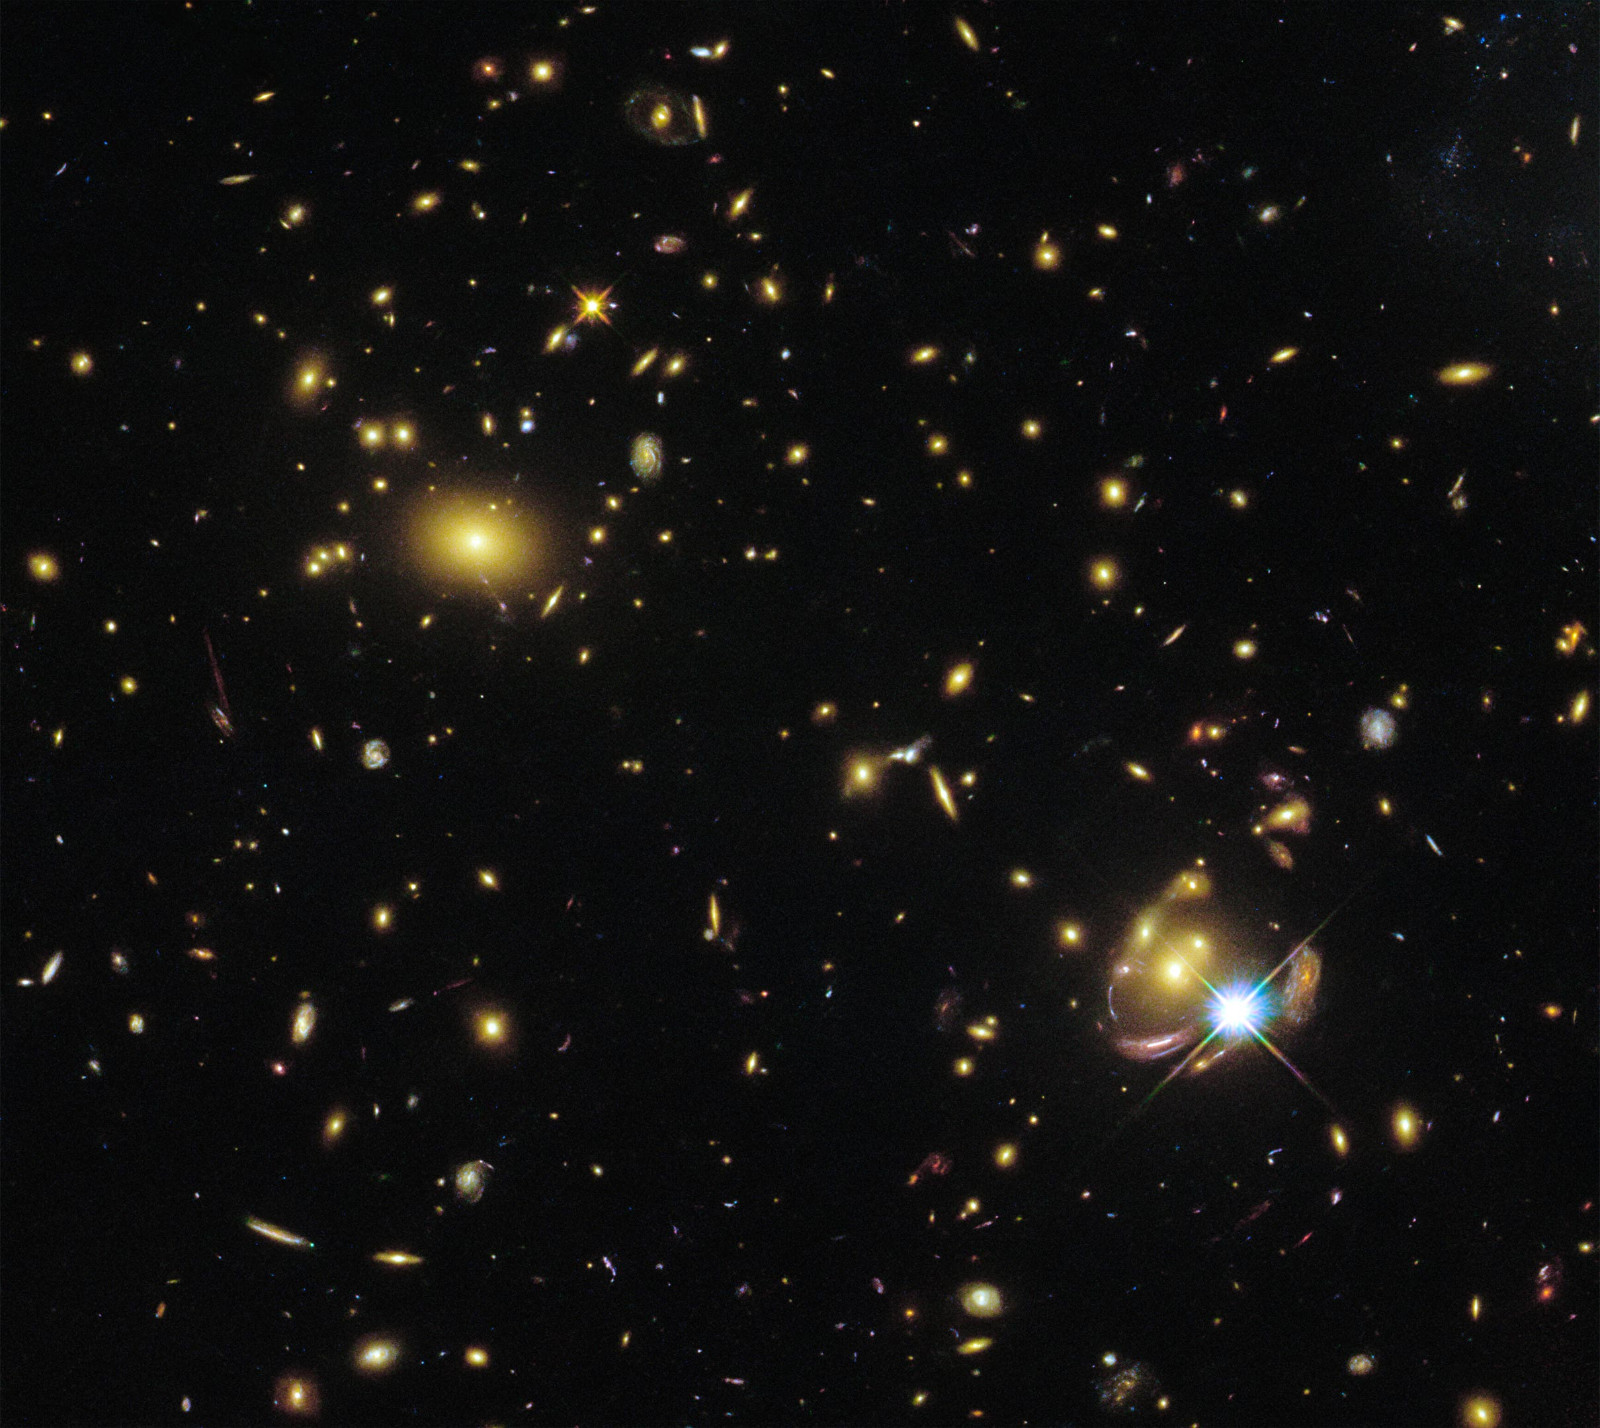 哈勃广角相机3号拍摄的照片中出现三次的SGAS 0033+02星系 引力透镜迷人眼